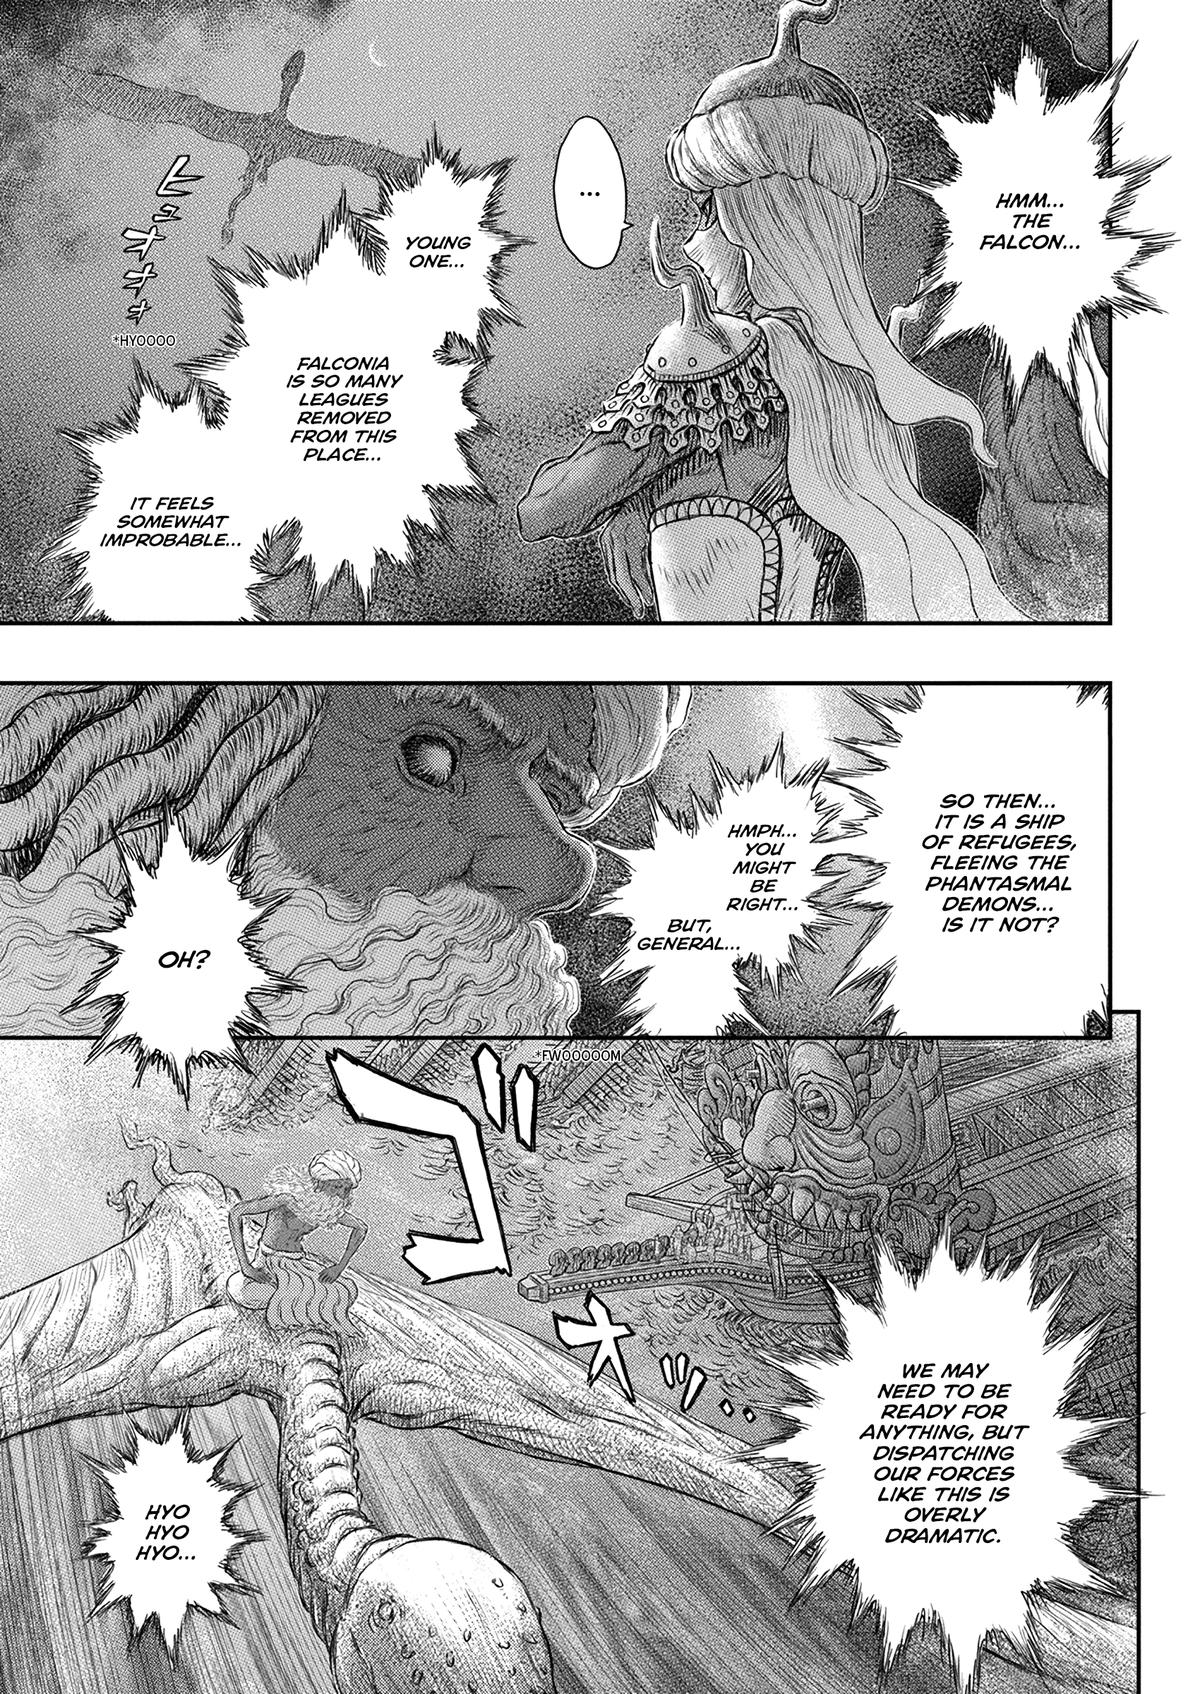 Berserk Manga Chapter 375 image 05